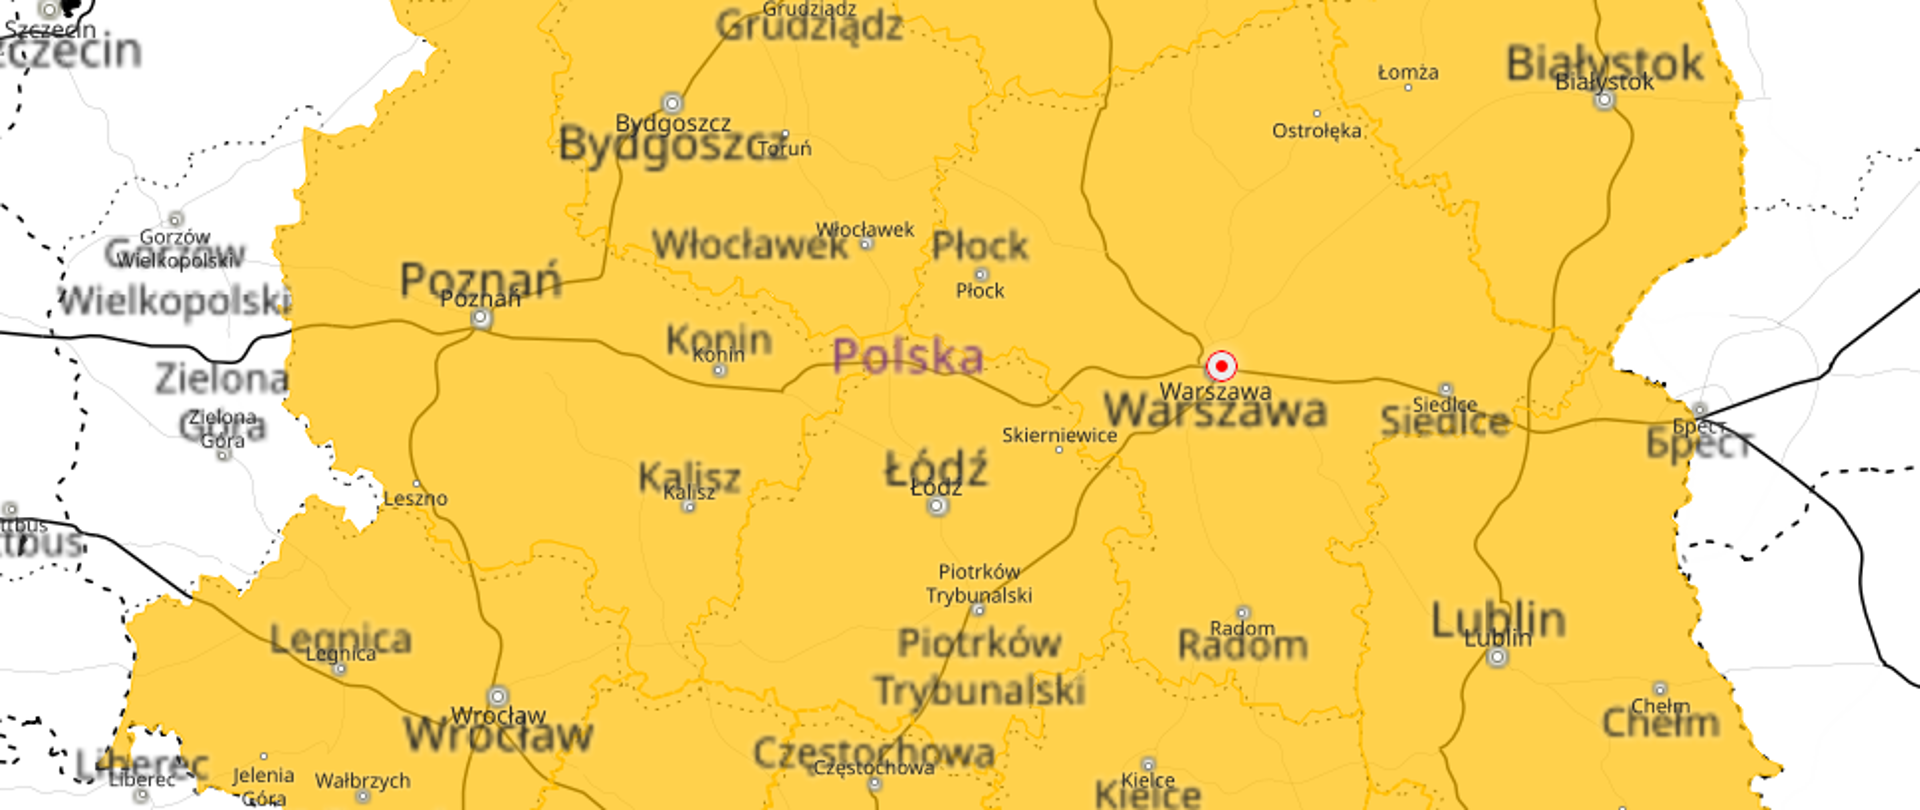 Zdjęcie przedstawia mapę ostrzeżeń meteo wydaną przez IMGW. Kolorem żółtym zaznaczono niemal wszystkie województwa w całej Polsce.